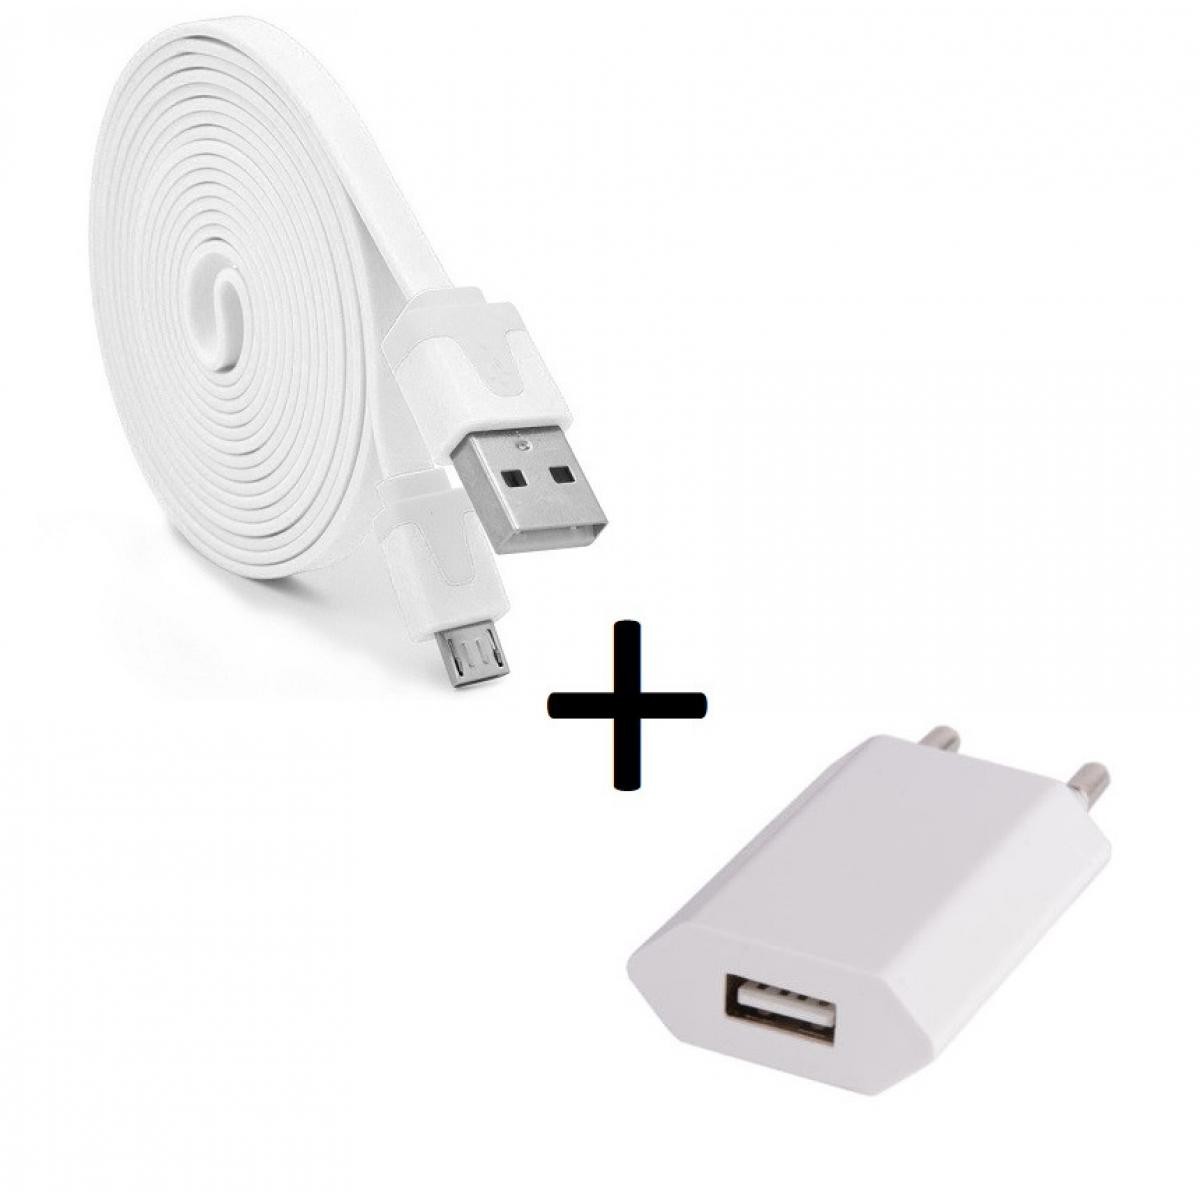 Shot - Pack Chargeur pour WIKO View 4 Lite Micro USB (Cable Noodle 3m + Prise Secteur Couleur USB) Android (BLANC) - Chargeur secteur téléphone